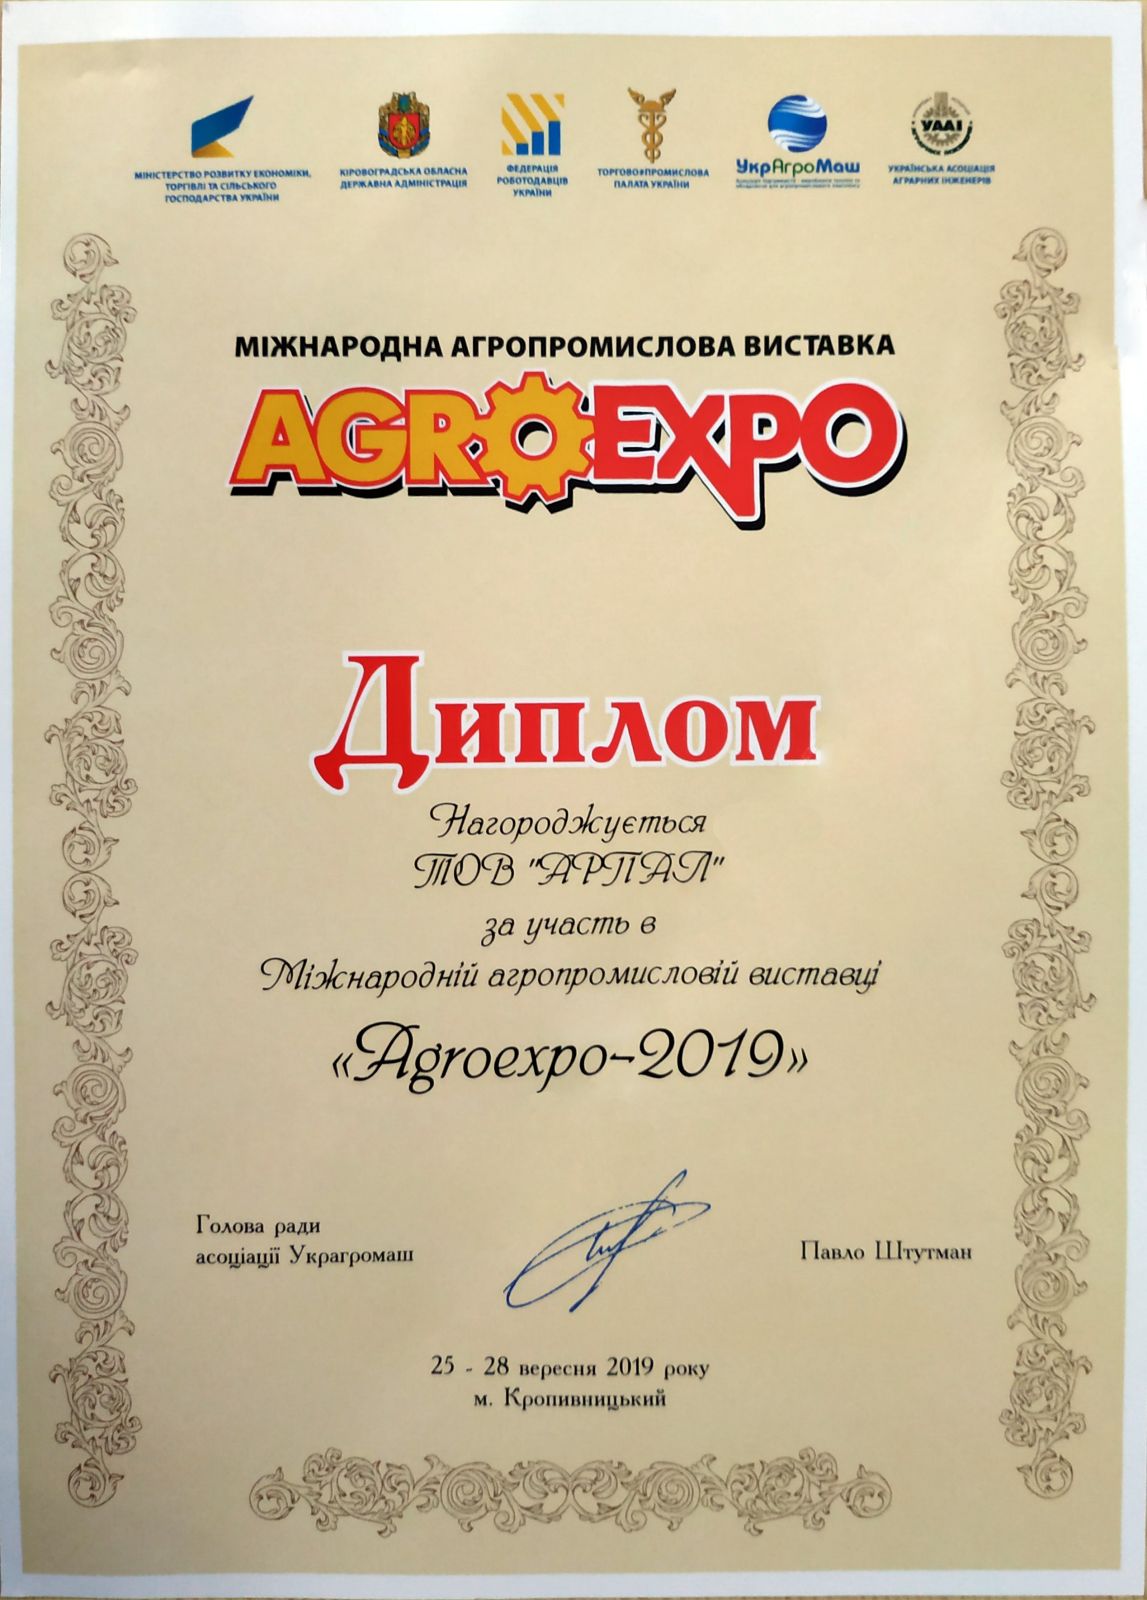 Arpal ha partecipato per la prima volta alla fiera AGROEXPO a Kropyvnytskyi